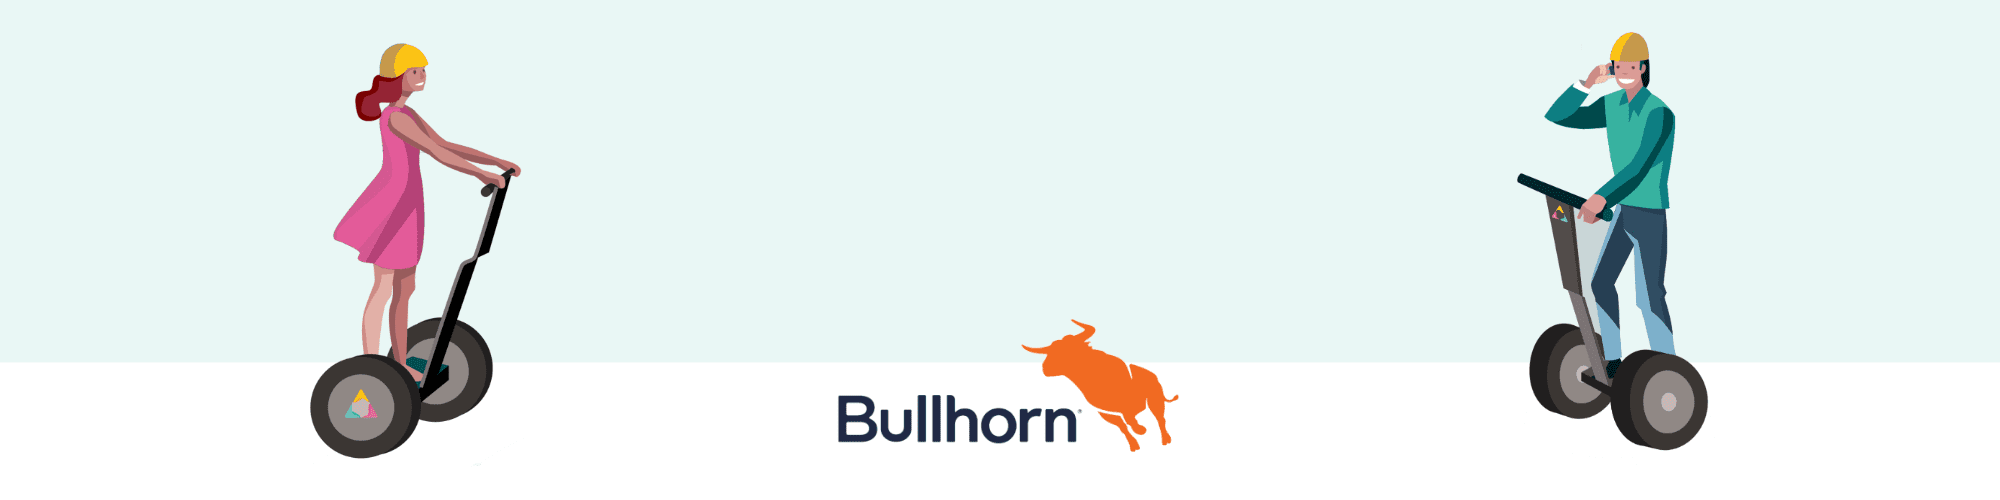 bullhorn-recruiment-crm-hack-banner